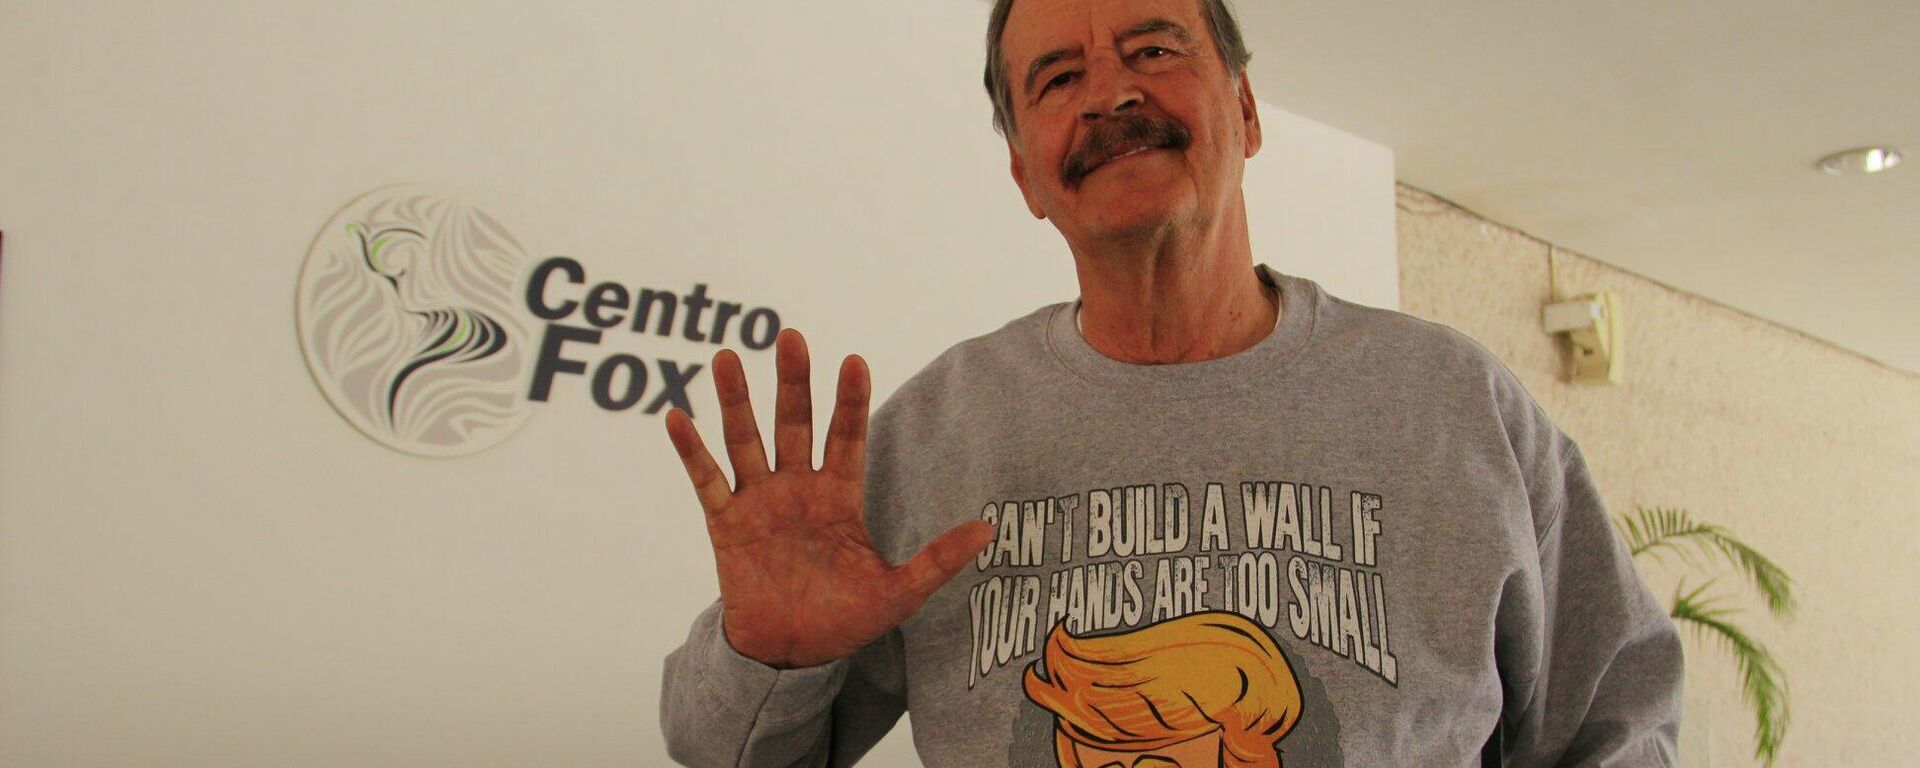 Vicente Fox, expresidente de México - Sputnik Mundo, 1920, 03.02.2022